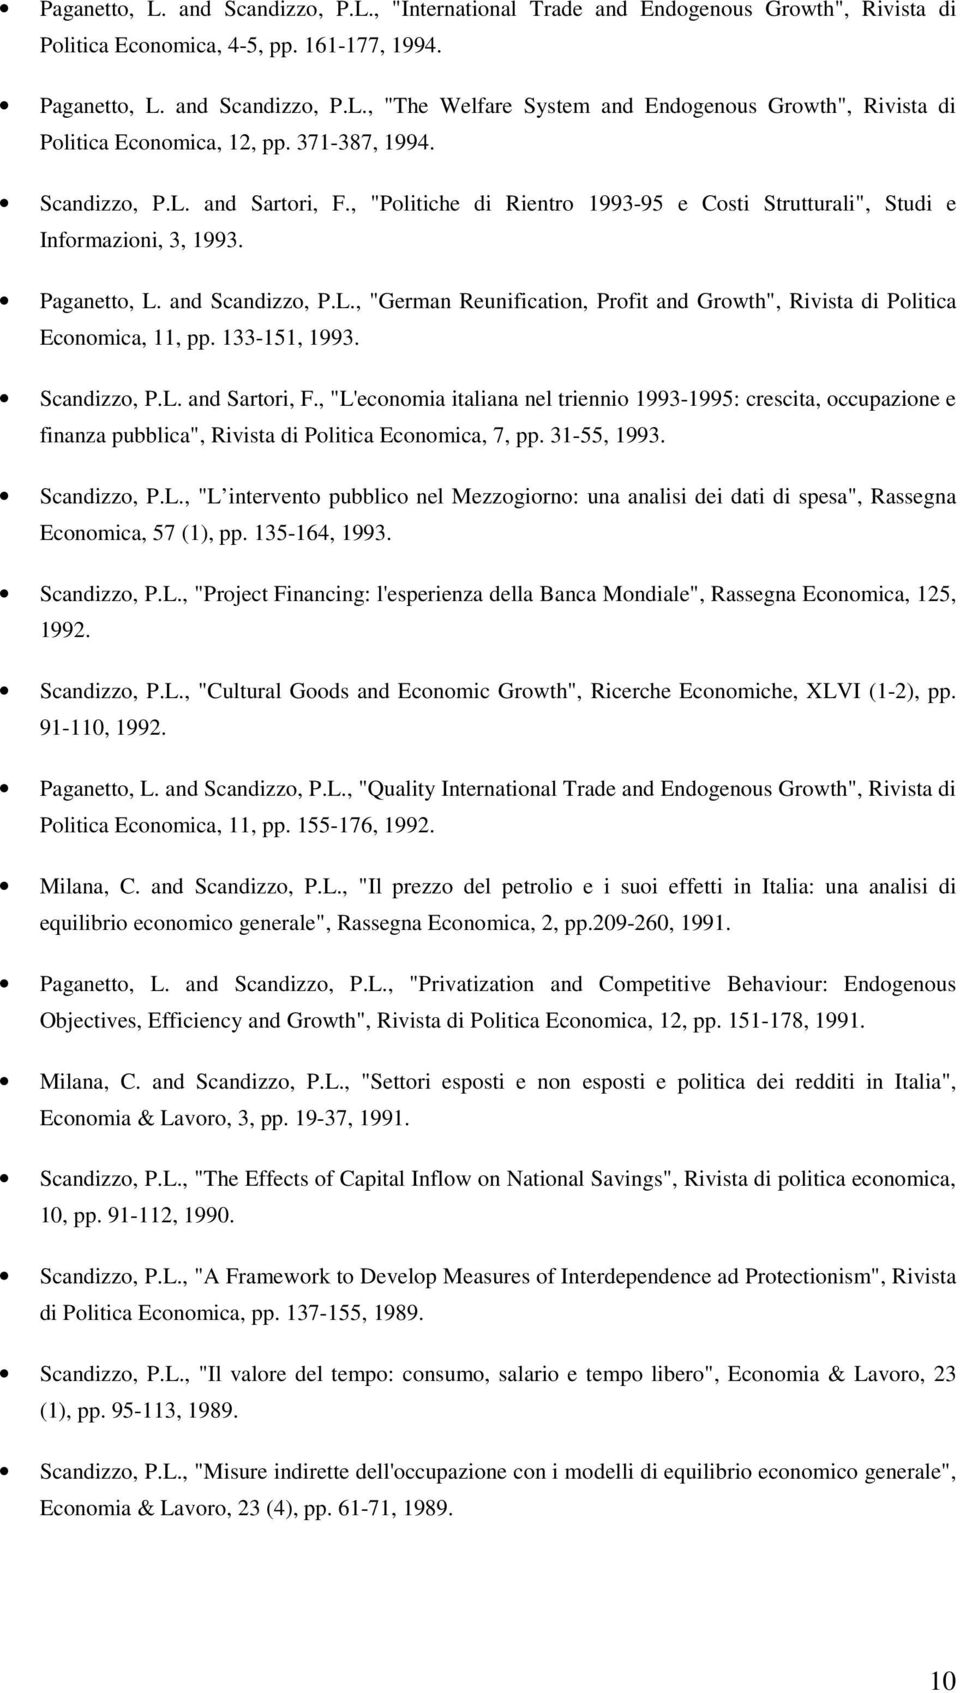 133-151, 1993. Scandizzo, P.L. and Sartori, F., "L'economia italiana nel triennio 1993-1995: crescita, occupazione e finanza pubblica", Rivista di Politica Economica, 7, pp. 31-55, 1993. Scandizzo, P.L., "L intervento pubblico nel Mezzogiorno: una analisi dei dati di spesa", Rassegna Economica, 57 (1), pp.